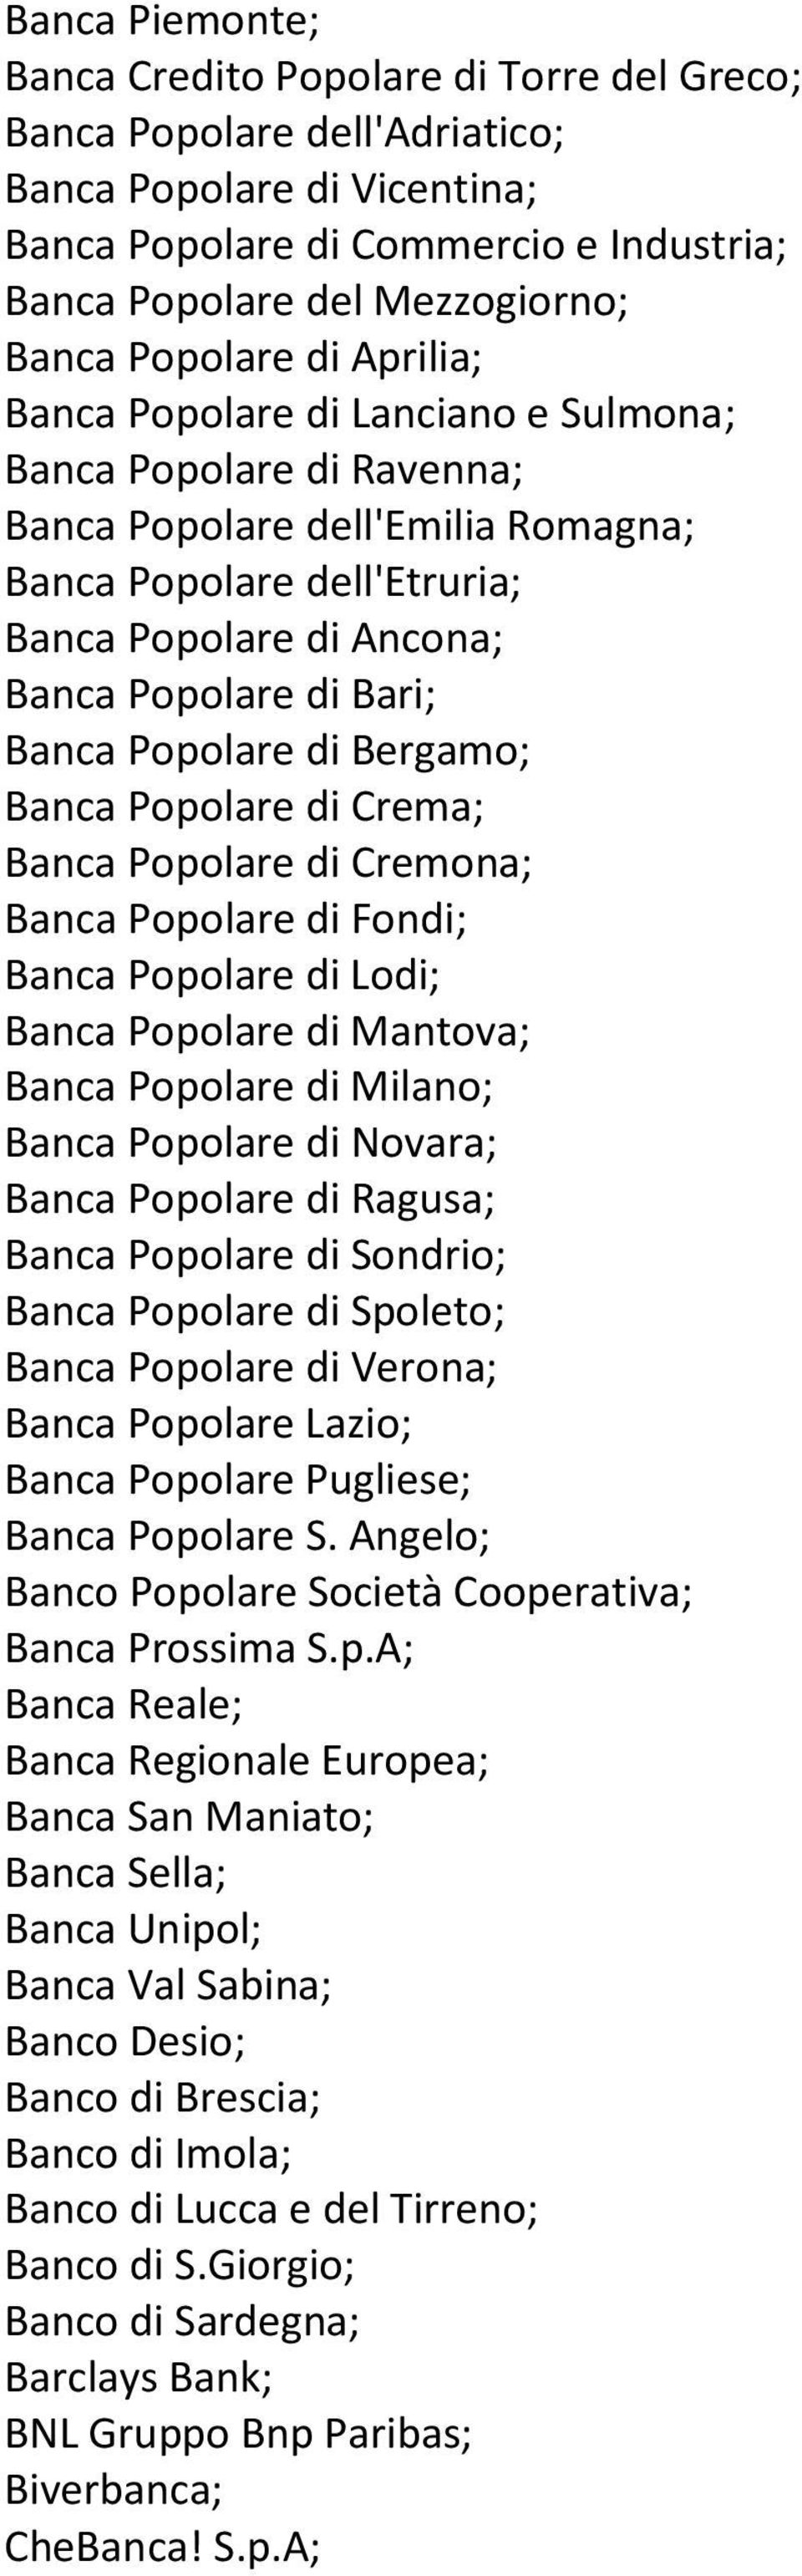 Bari; Banca Popolare di Bergamo; Banca Popolare di Crema; Banca Popolare di Cremona; Banca Popolare di Fondi; Banca Popolare di Lodi; Banca Popolare di Mantova; Banca Popolare di Milano; Banca